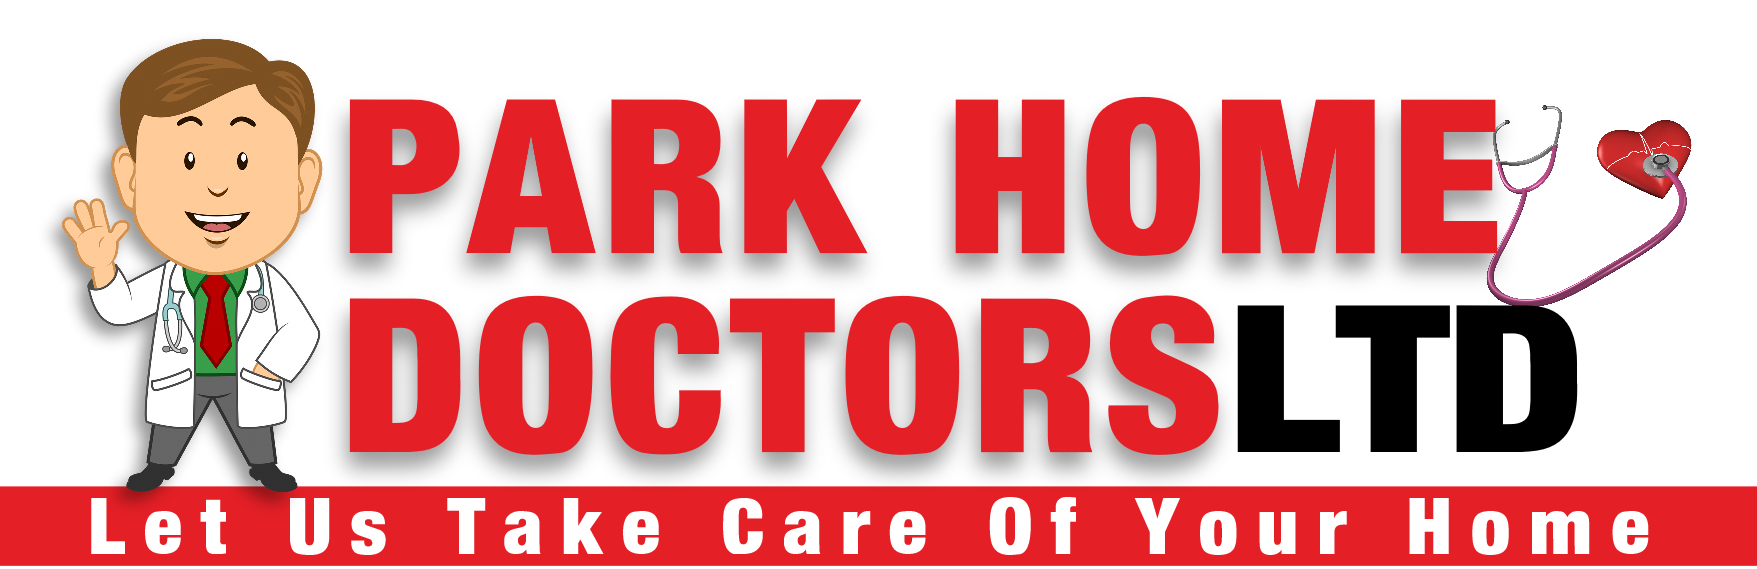 Park Home Doctors Ltd.